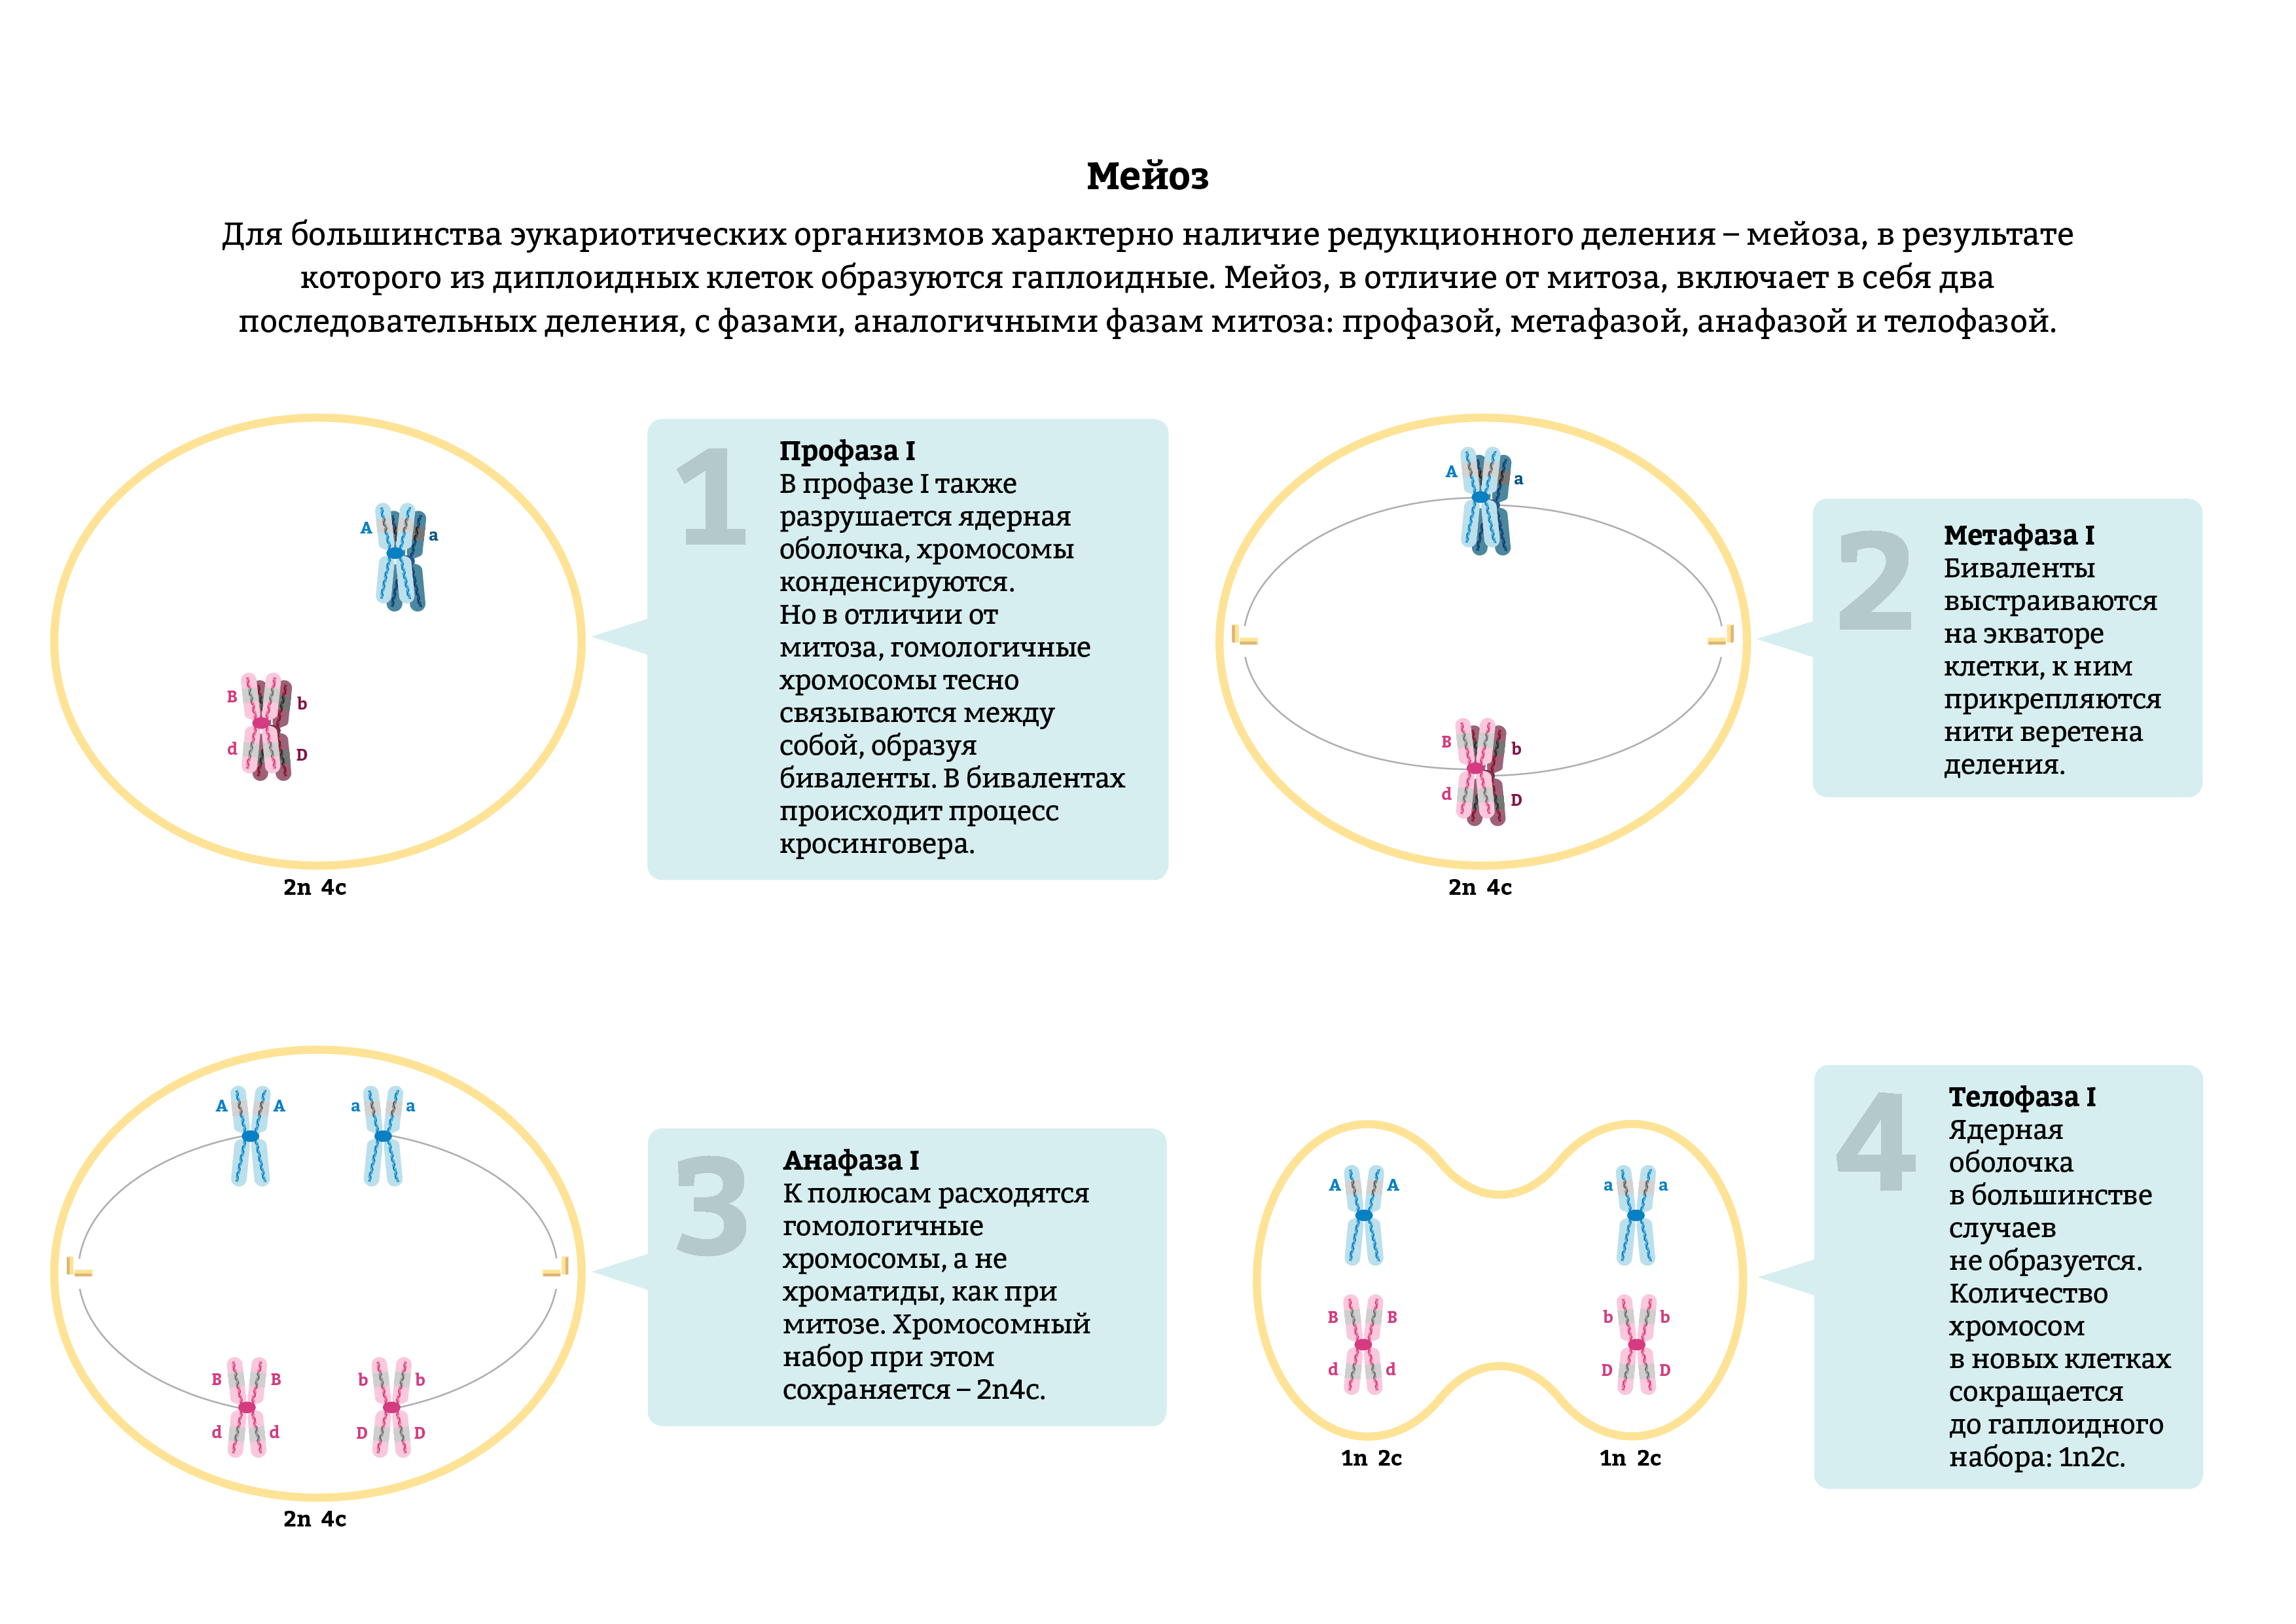 Краткое описание стадий и схемы деления клеток посредством митоза